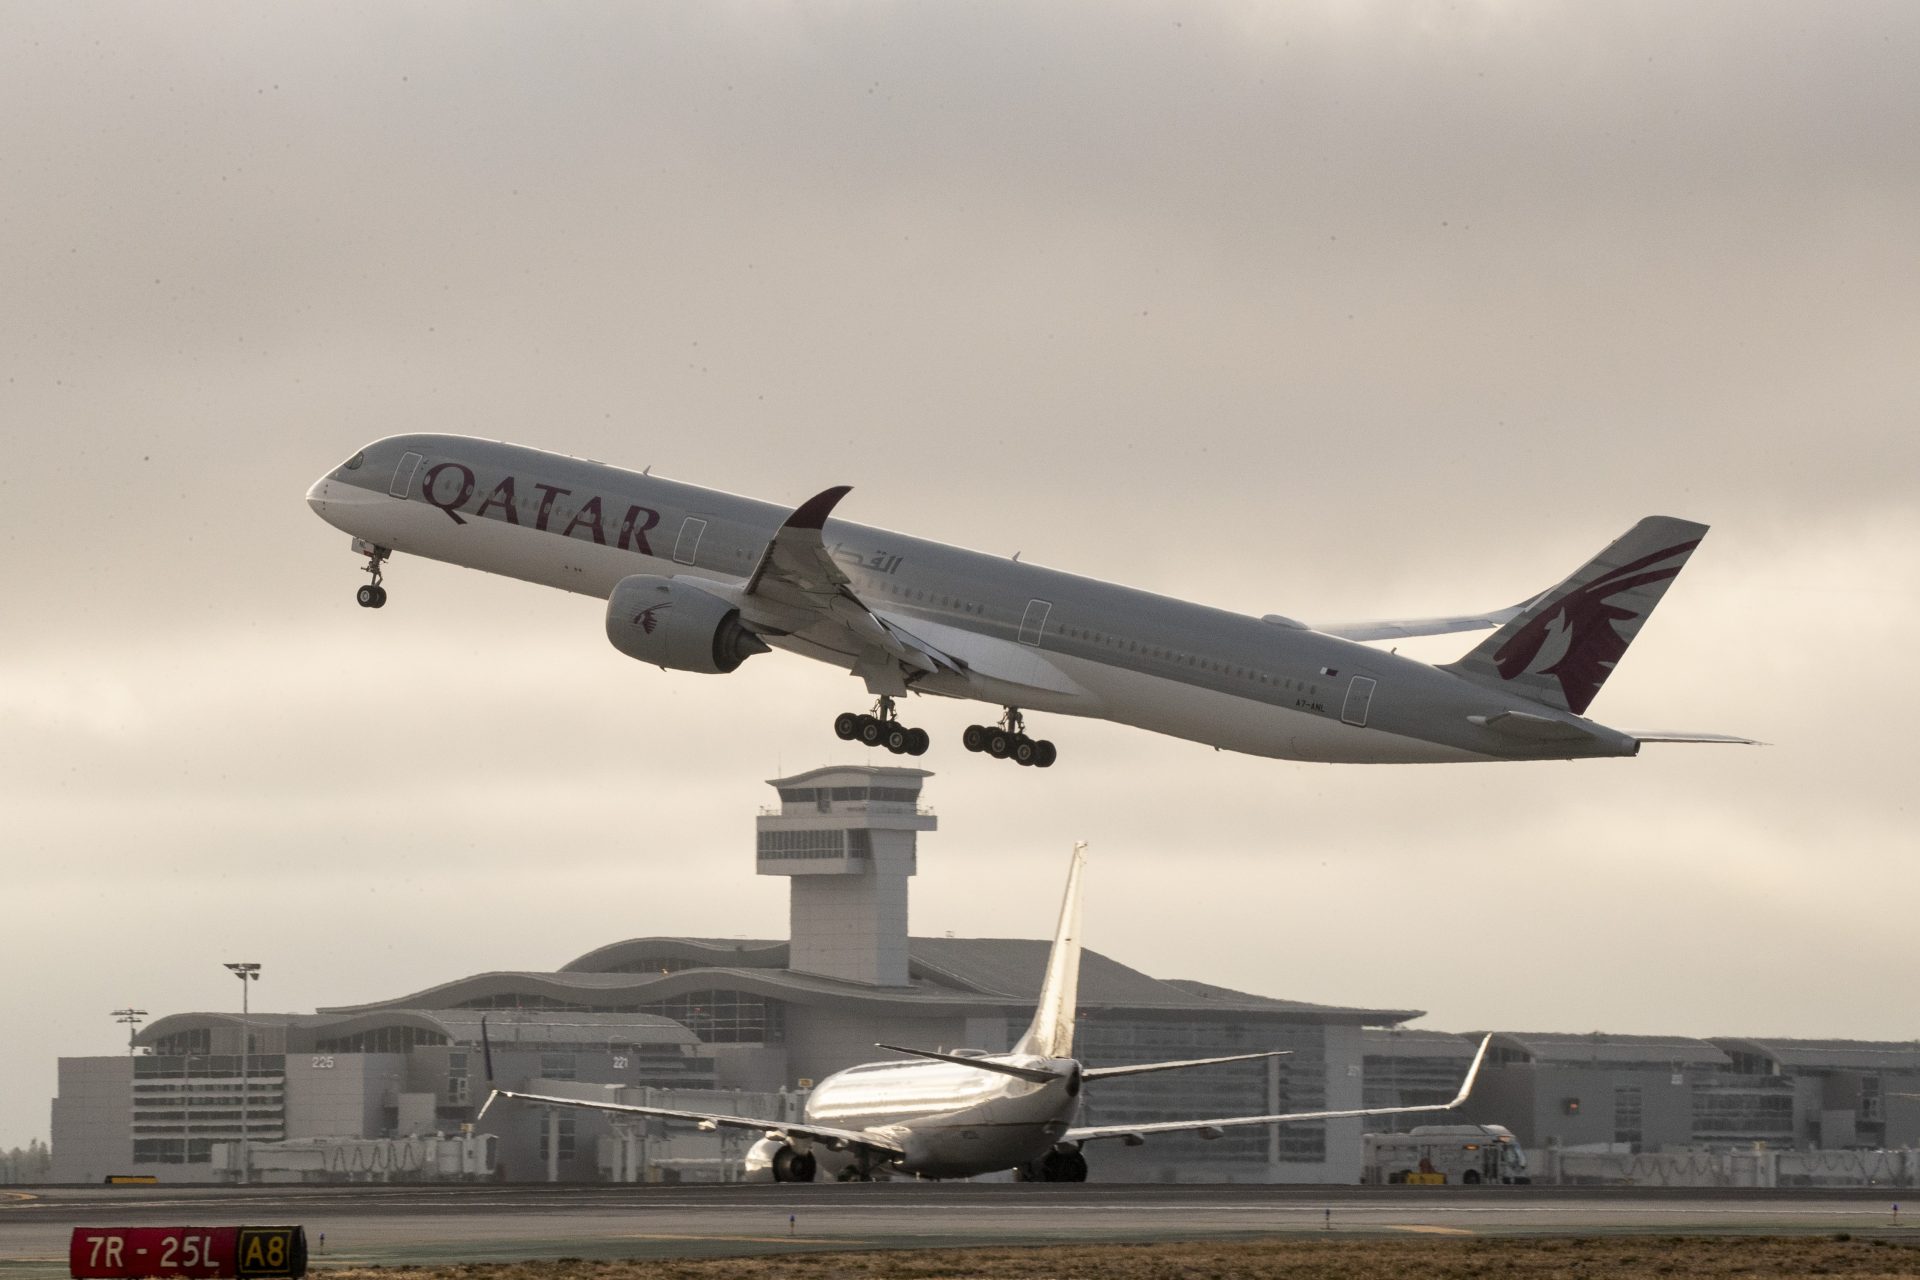 Justice australienne rejette plainte de 5 femmes contre Qatar Airways